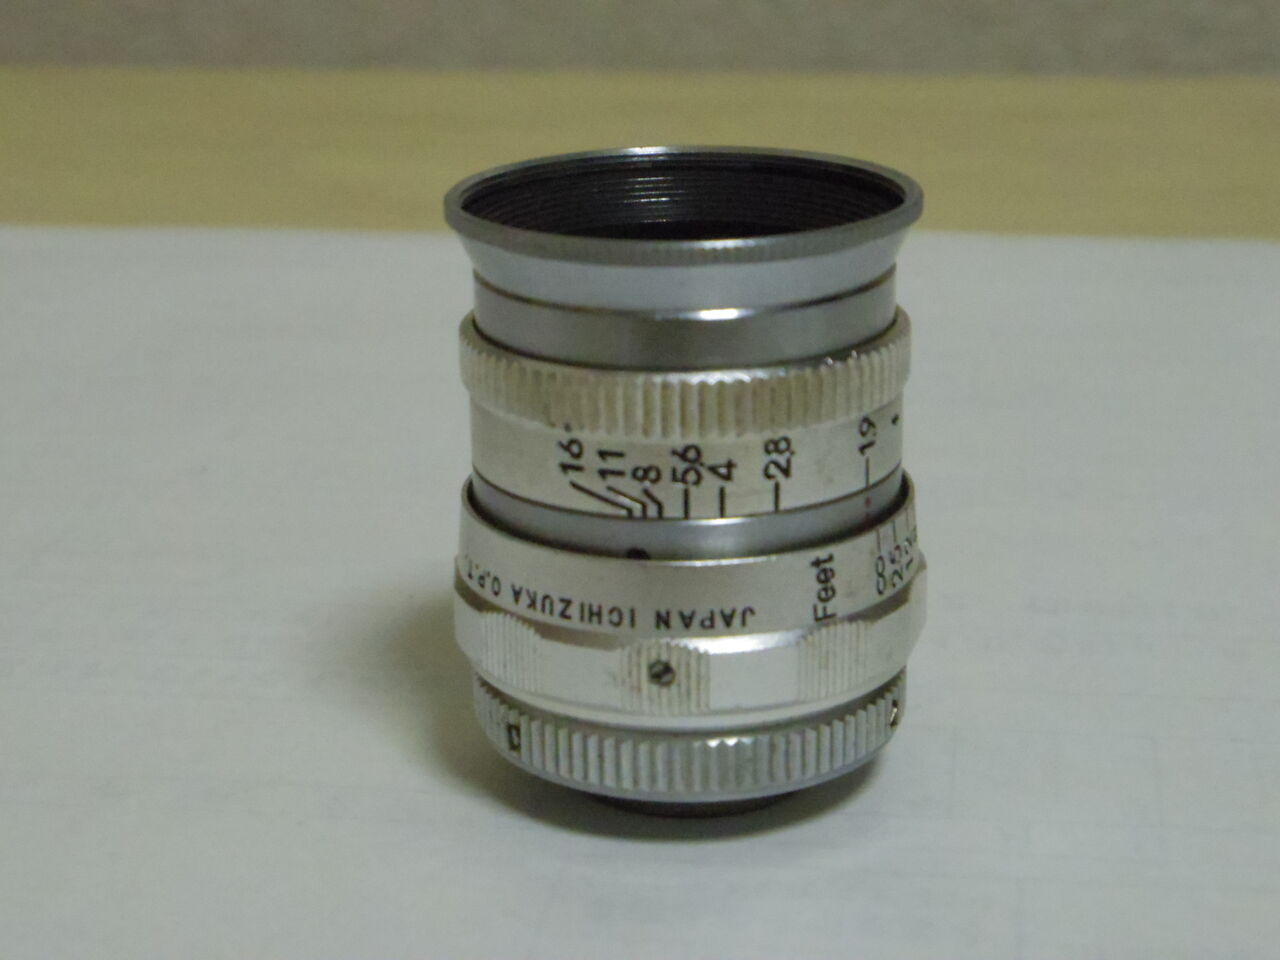 カメラ河童のシネレンズ図鑑4-KINO-SANKYO 13mm F1.9 D TypeⅠ 改訂